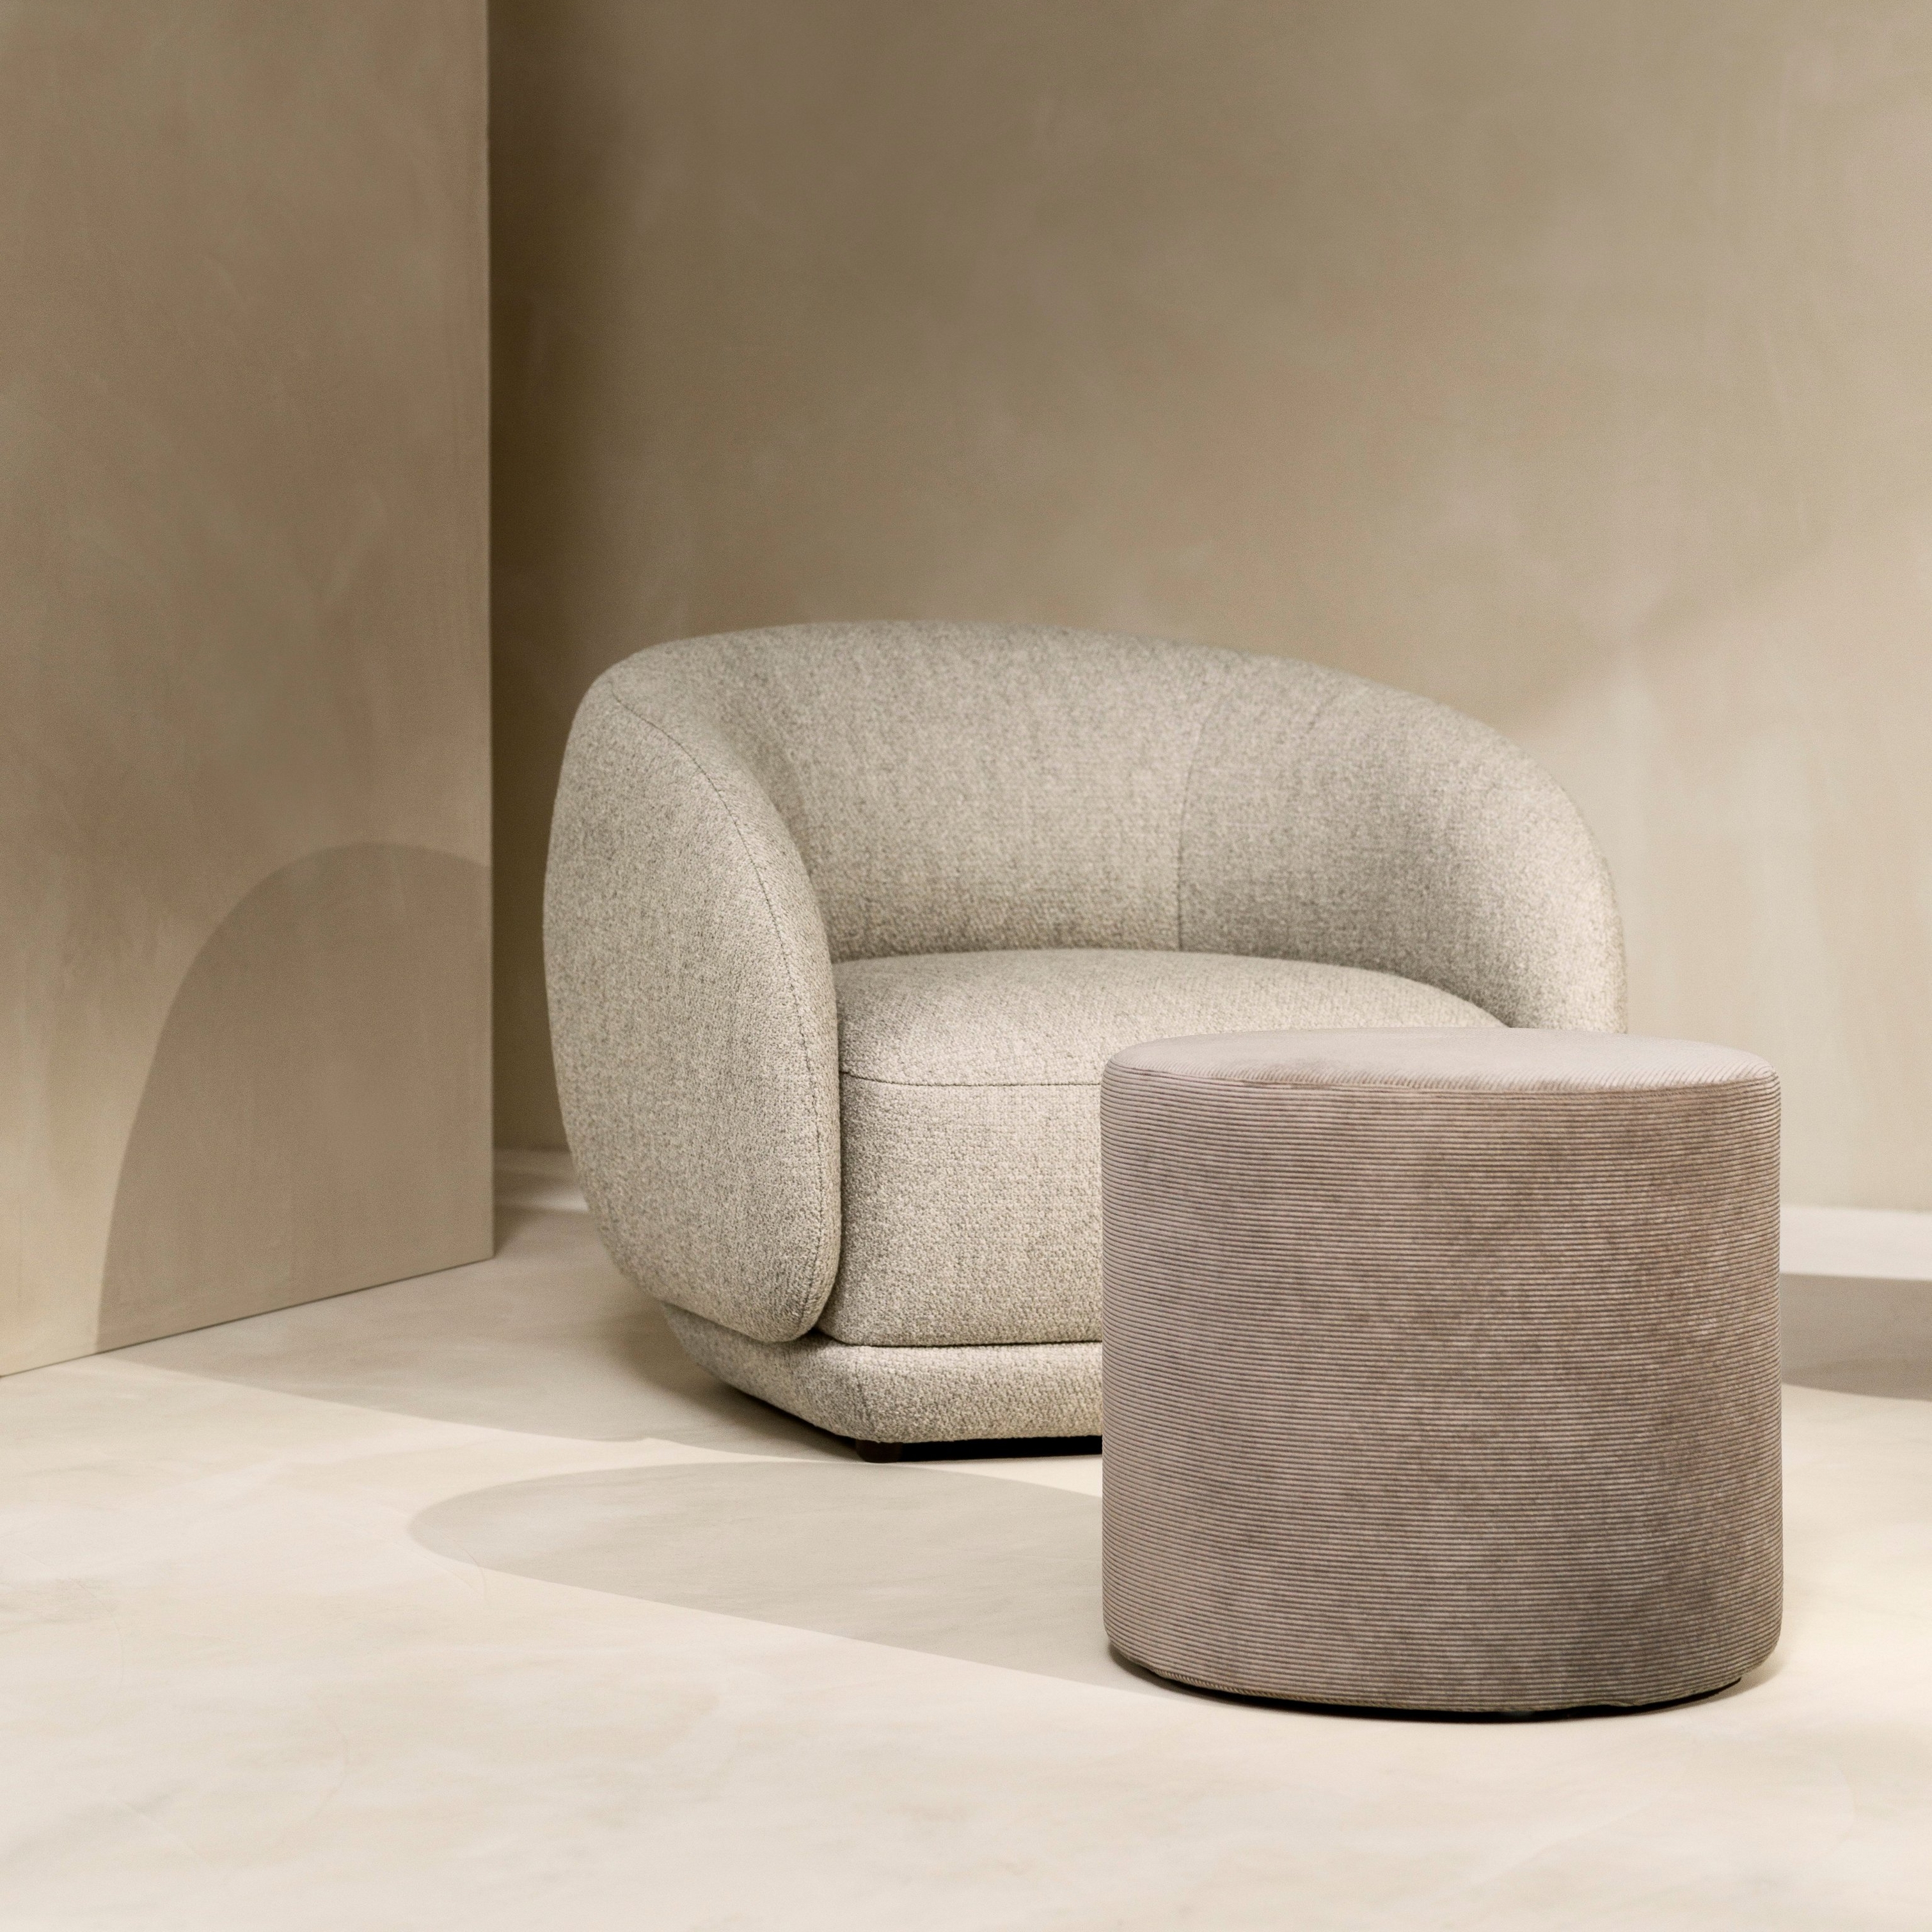 Тихий уголок с креслом Bolzano, обитом тканью Lazio бежевого цвета, и подставкой для ног Eden, обитом тканью Skagen песочного цвета.